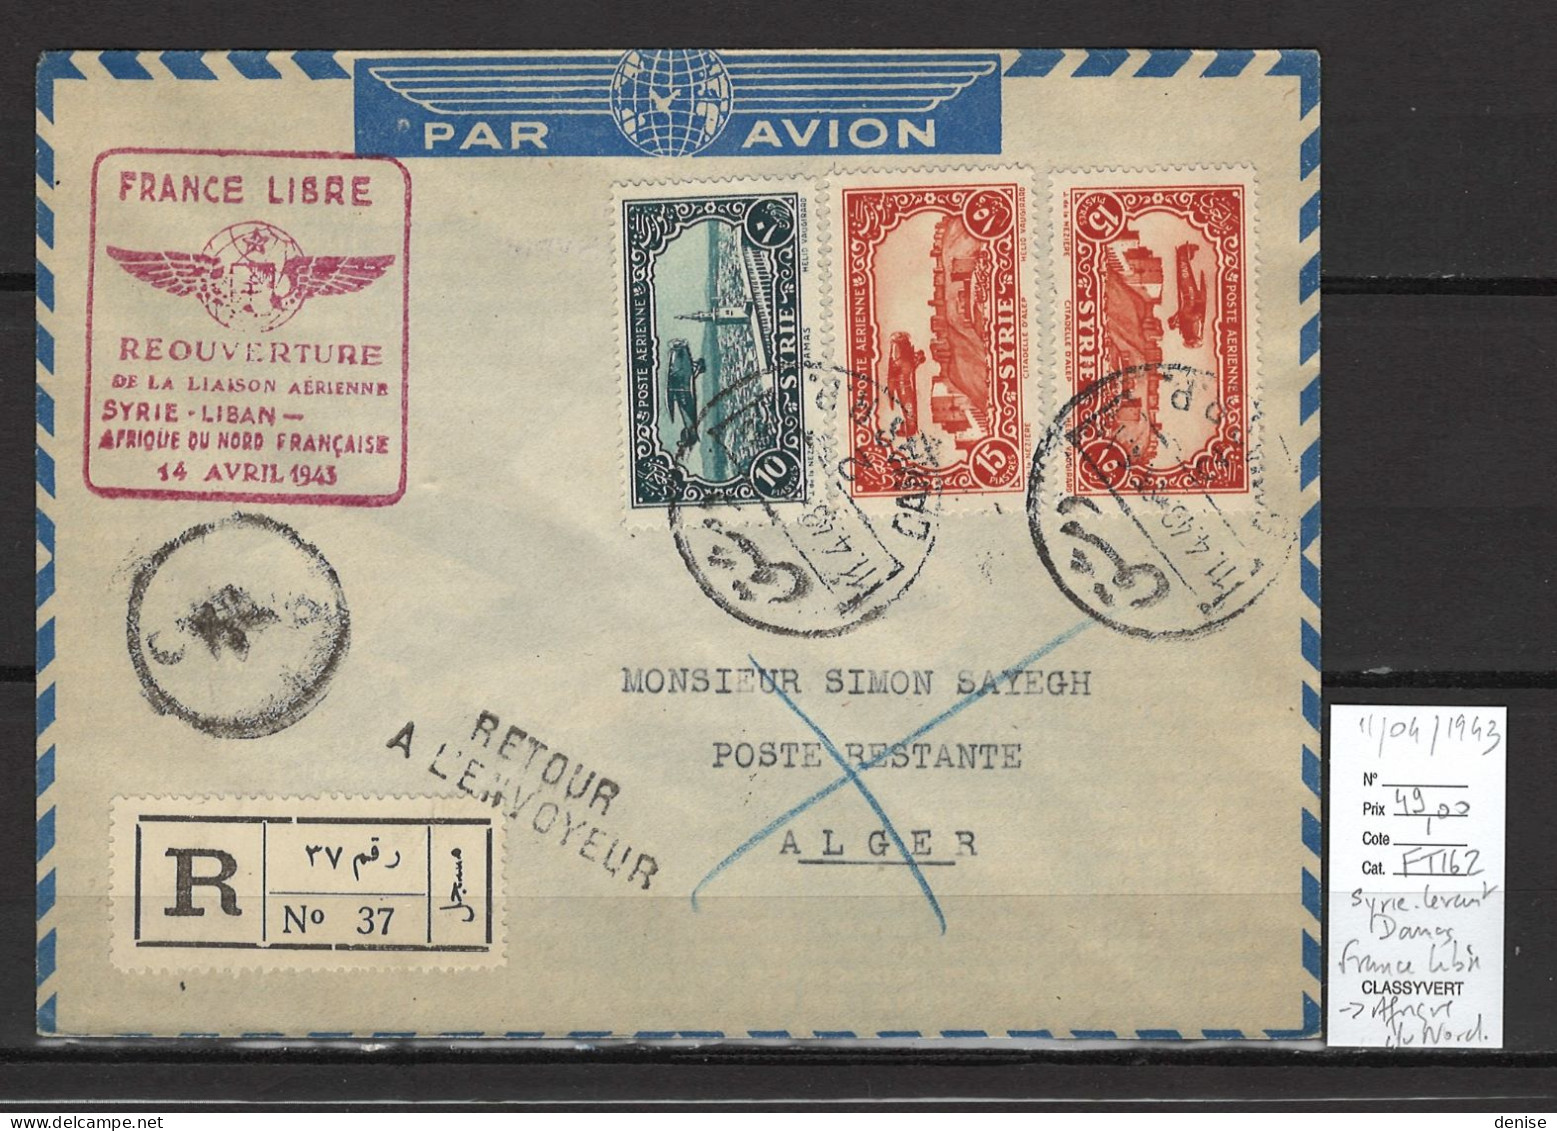 Syrie - France Libre - 1er Vol Afrique Du Nord Alger - 11/04/1943 - Posta Aerea